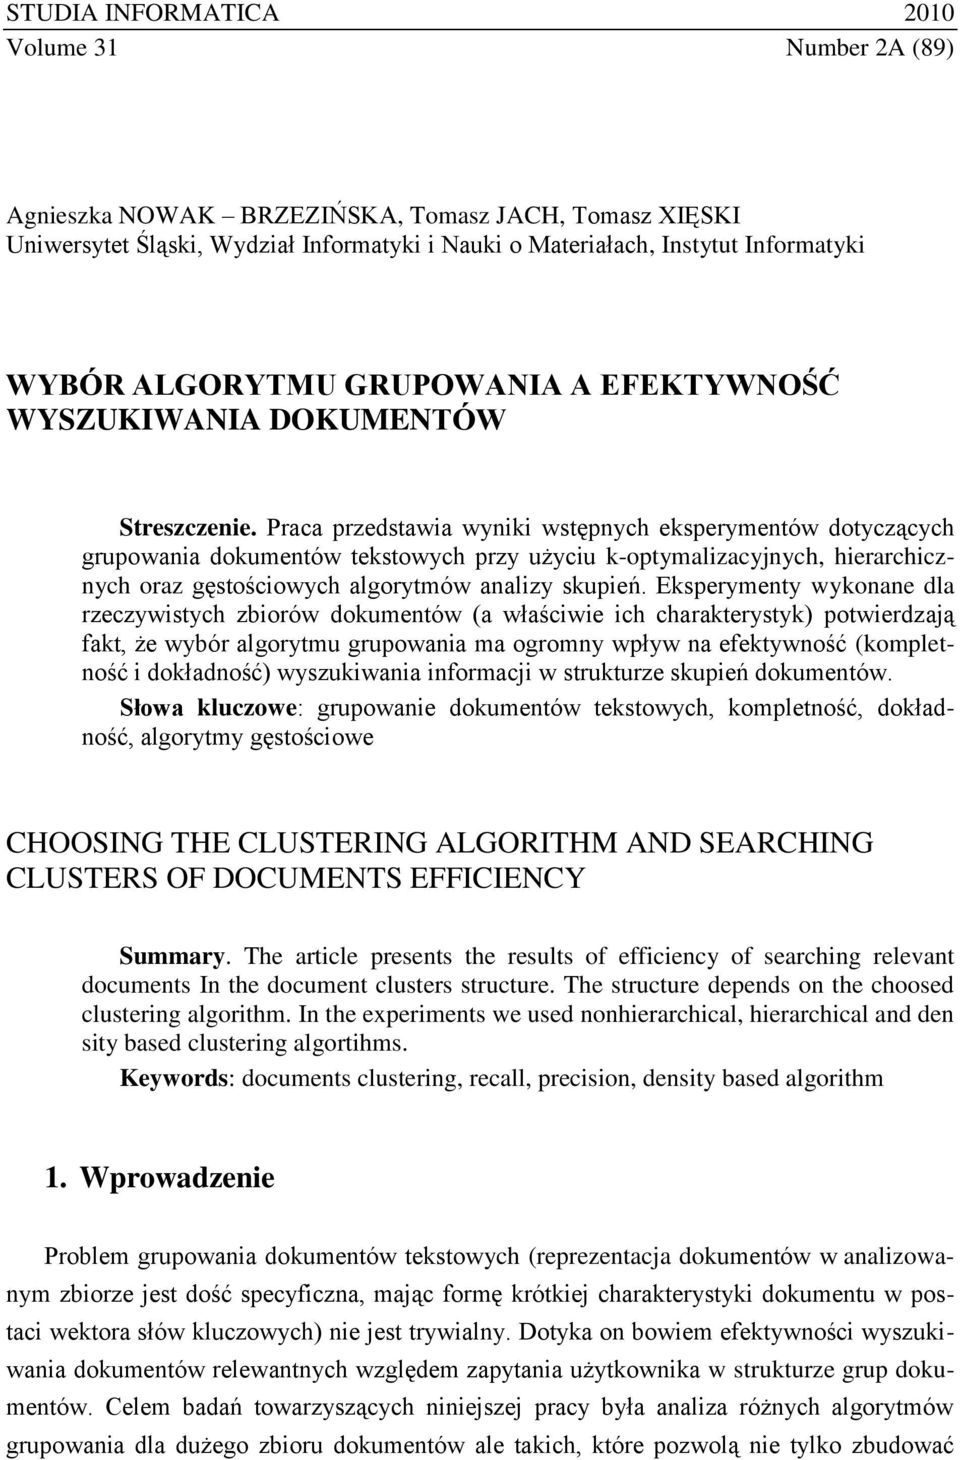 Praca przedstawia wyniki wstępnych eksperymentów dotyczących grupowania dokumentów tekstowych przy użyciu k-optymalizacyjnych, hierarchicznych oraz gęstościowych algorytmów analizy skupień.